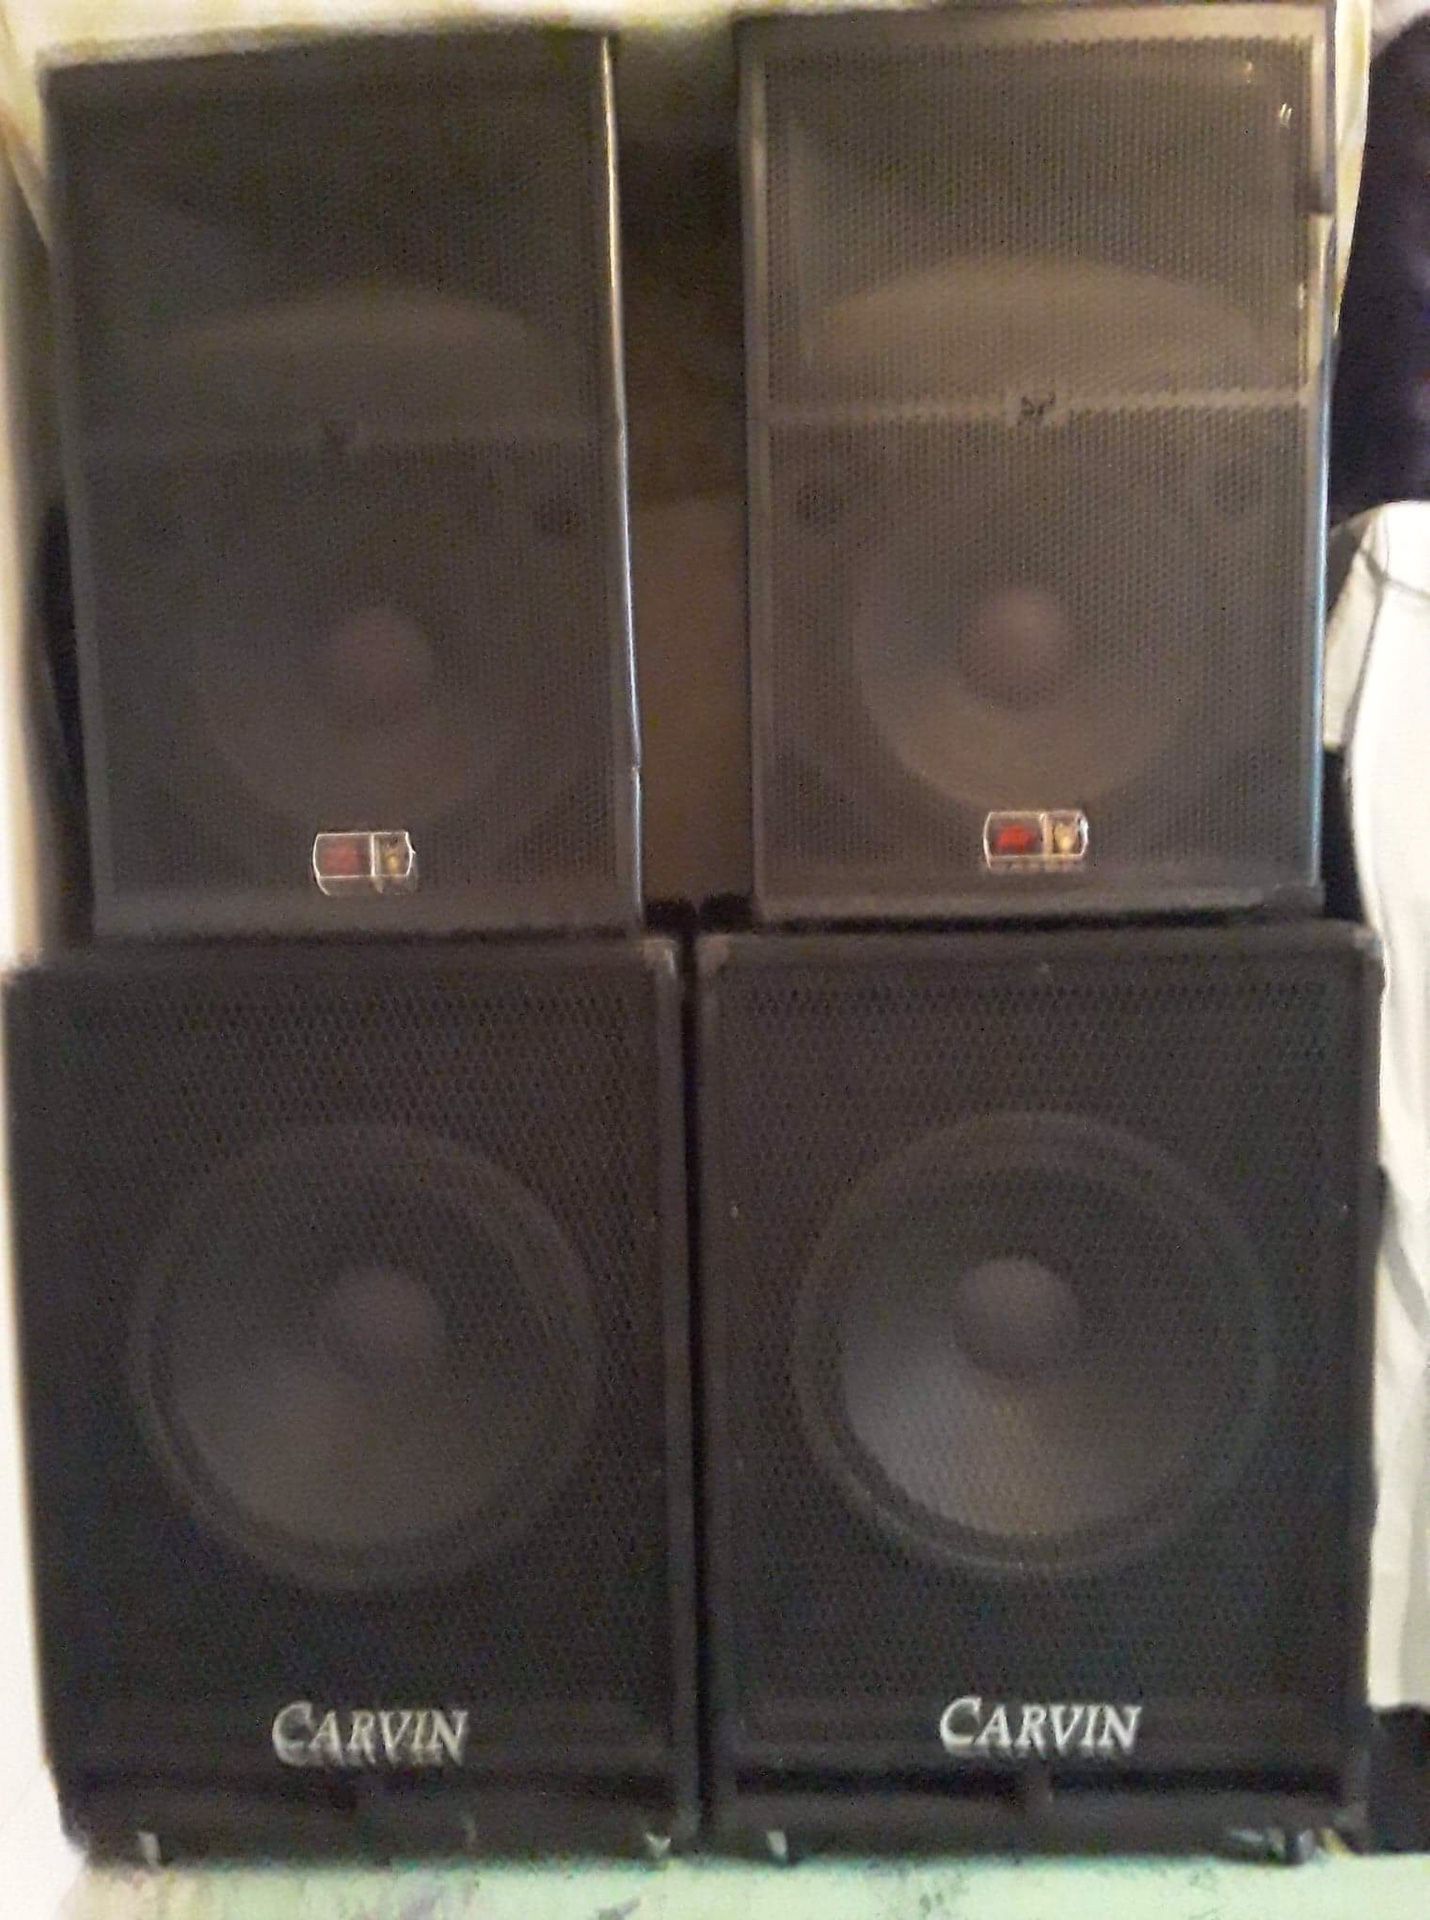 15s and 18s speaker’s, woofers, dj equipment